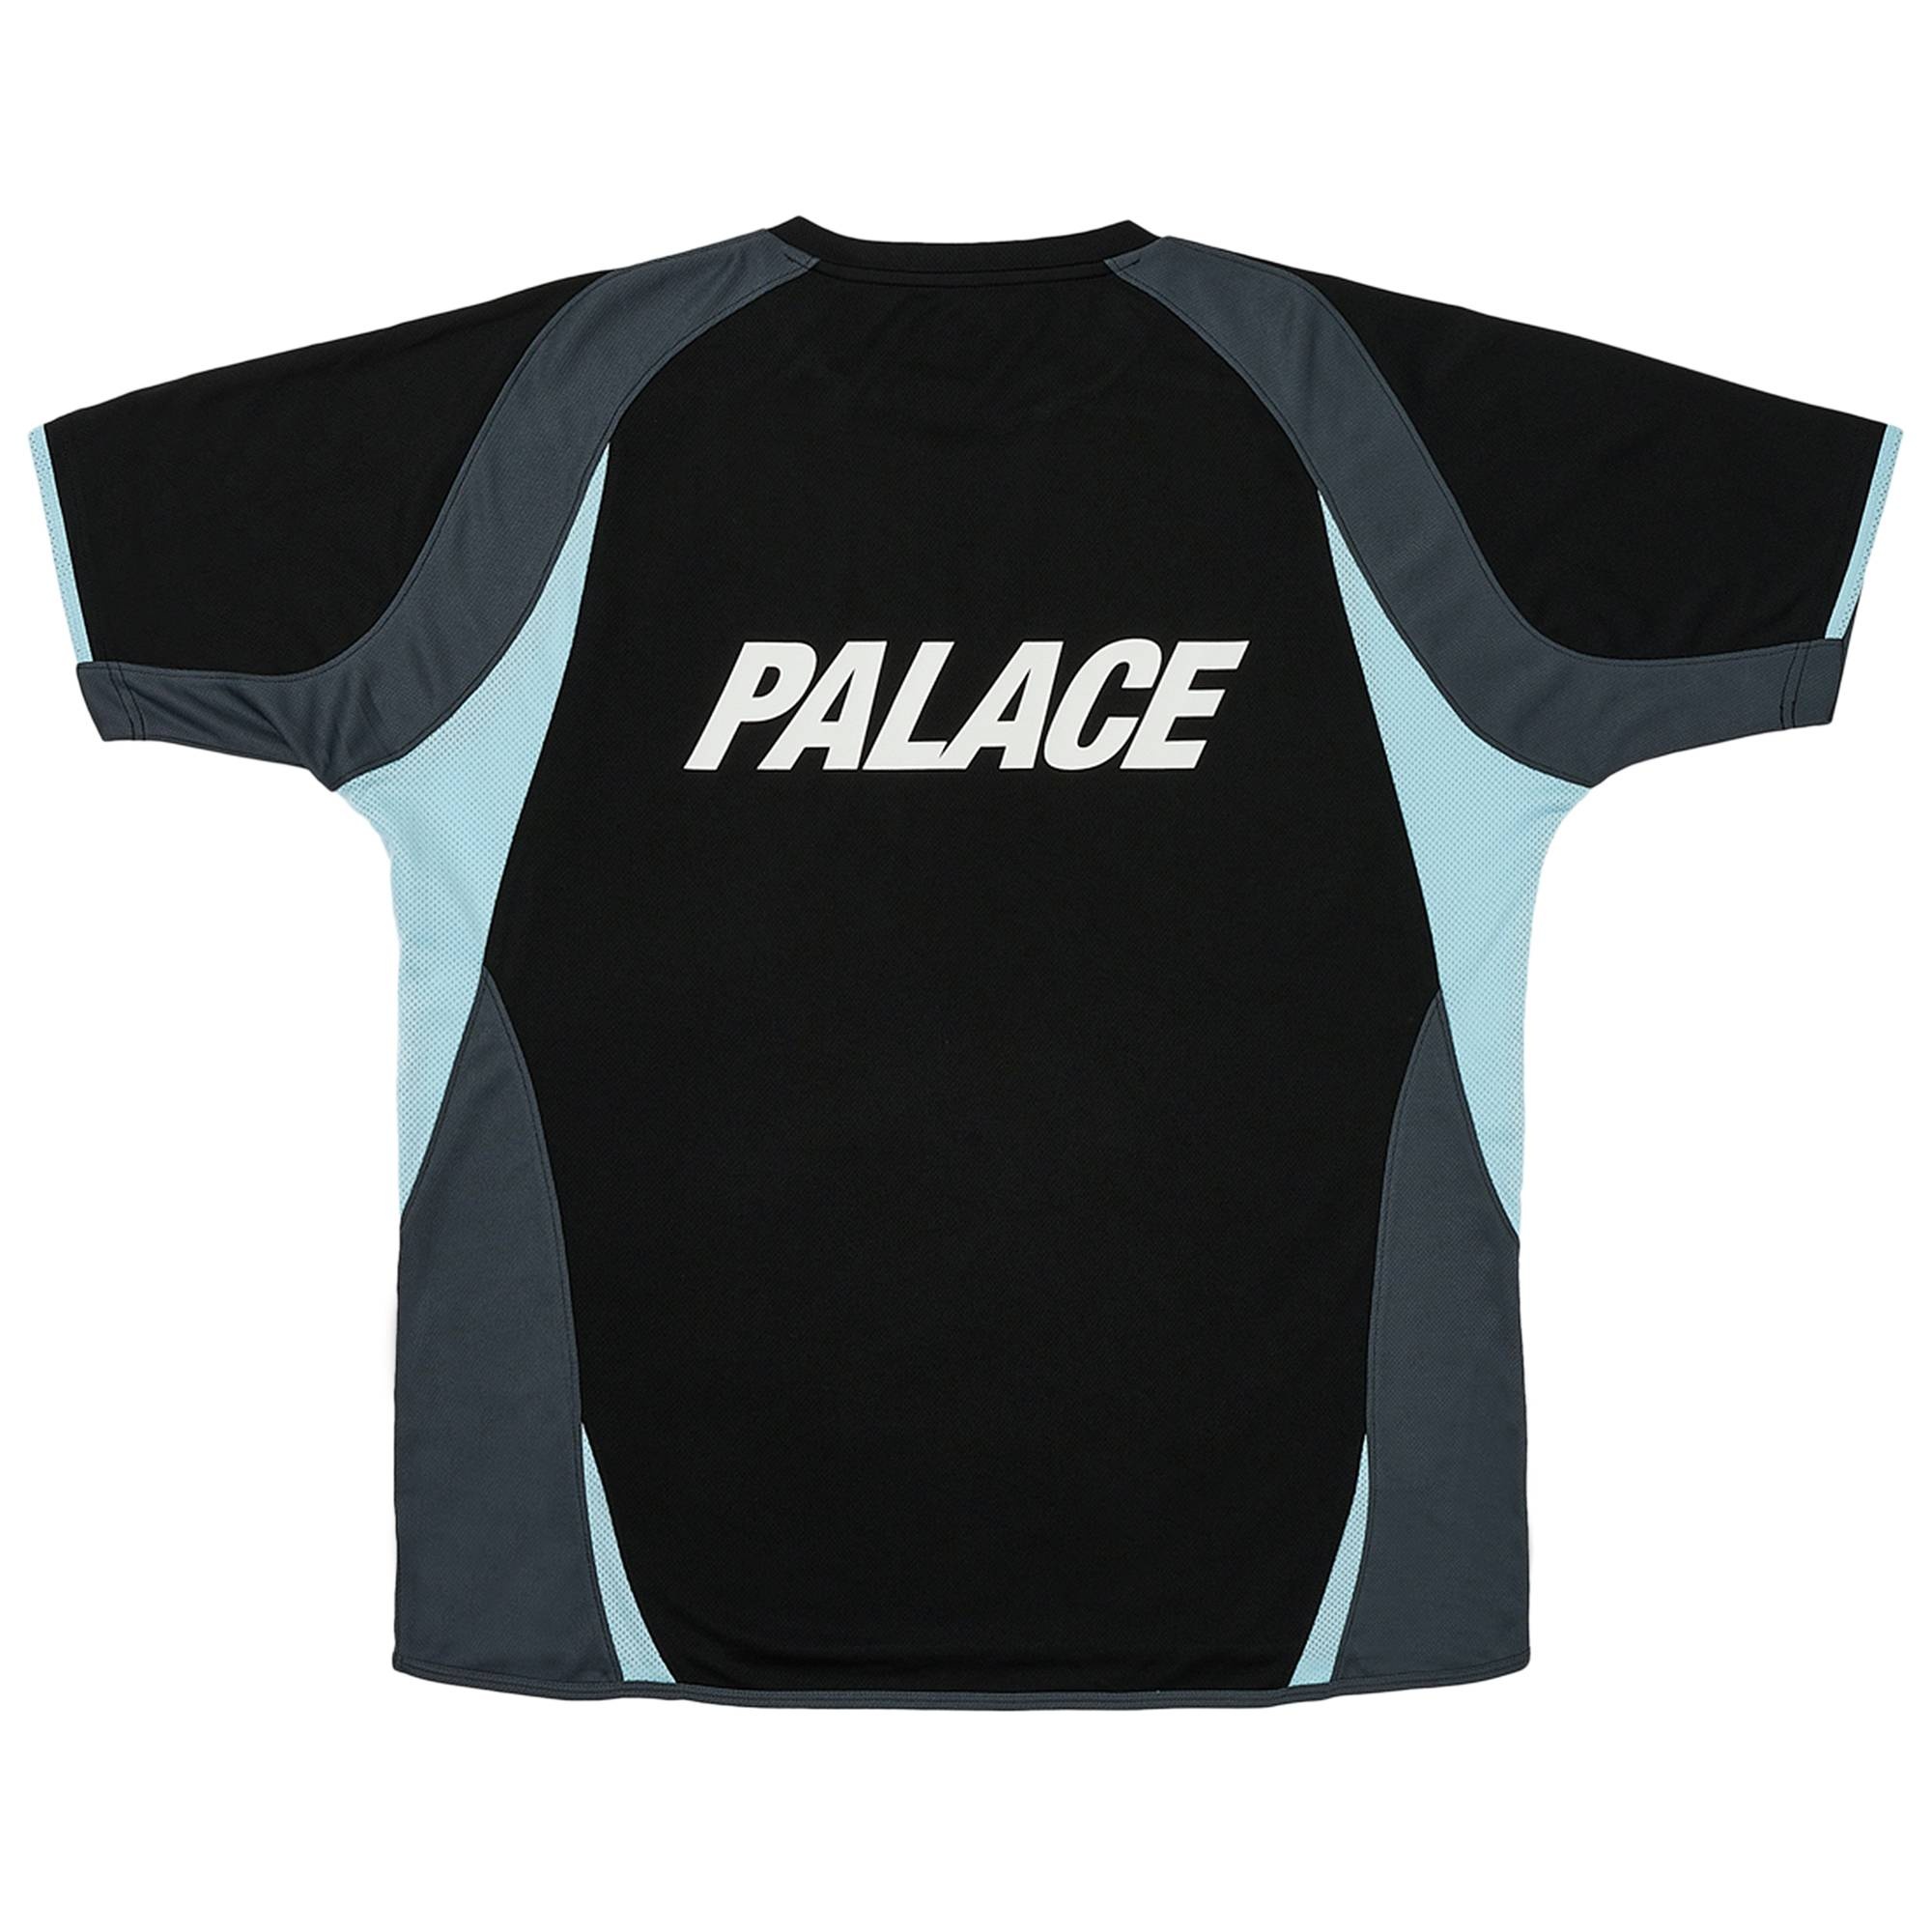 palace pro jersey blackメンズ